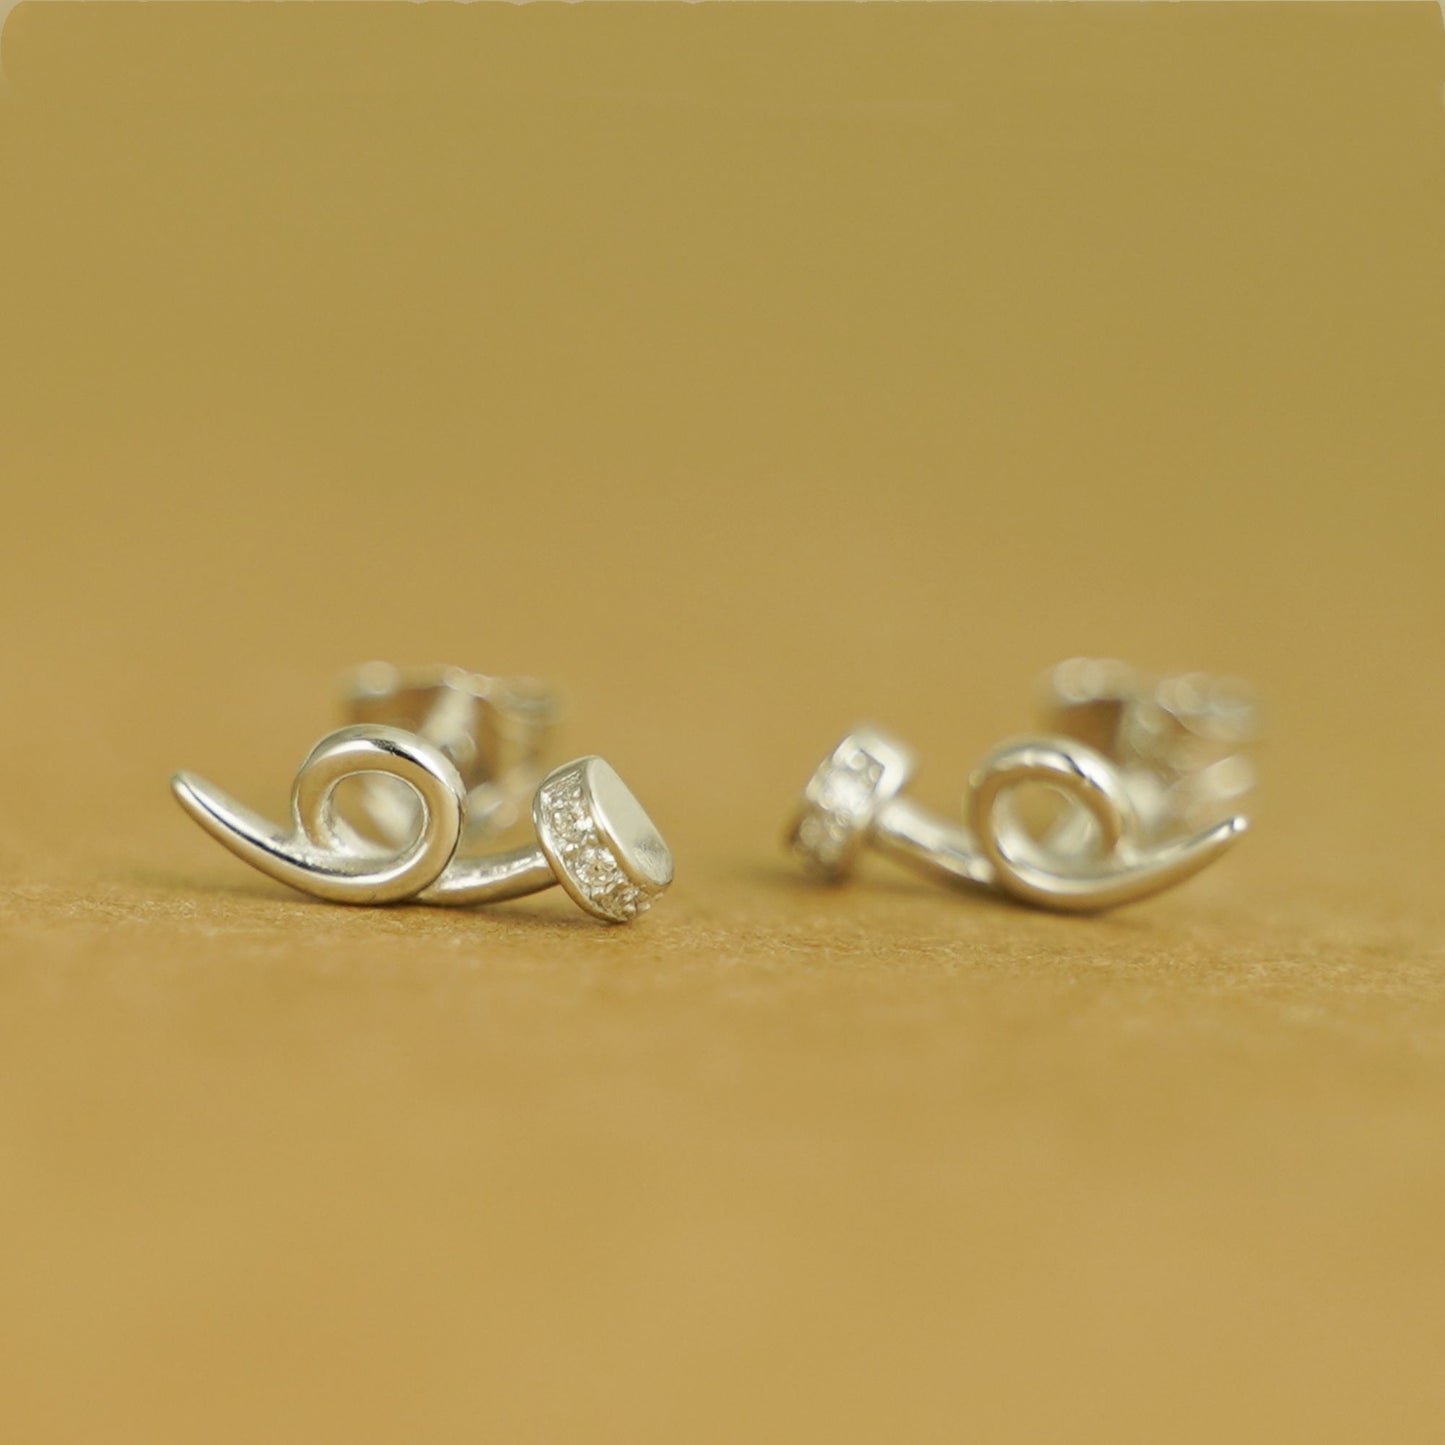 Sterling Silver Twisted Nail Spiral Pin CZ Stud Earrings - Minimalist Dainty Ear Piercing Jewelry